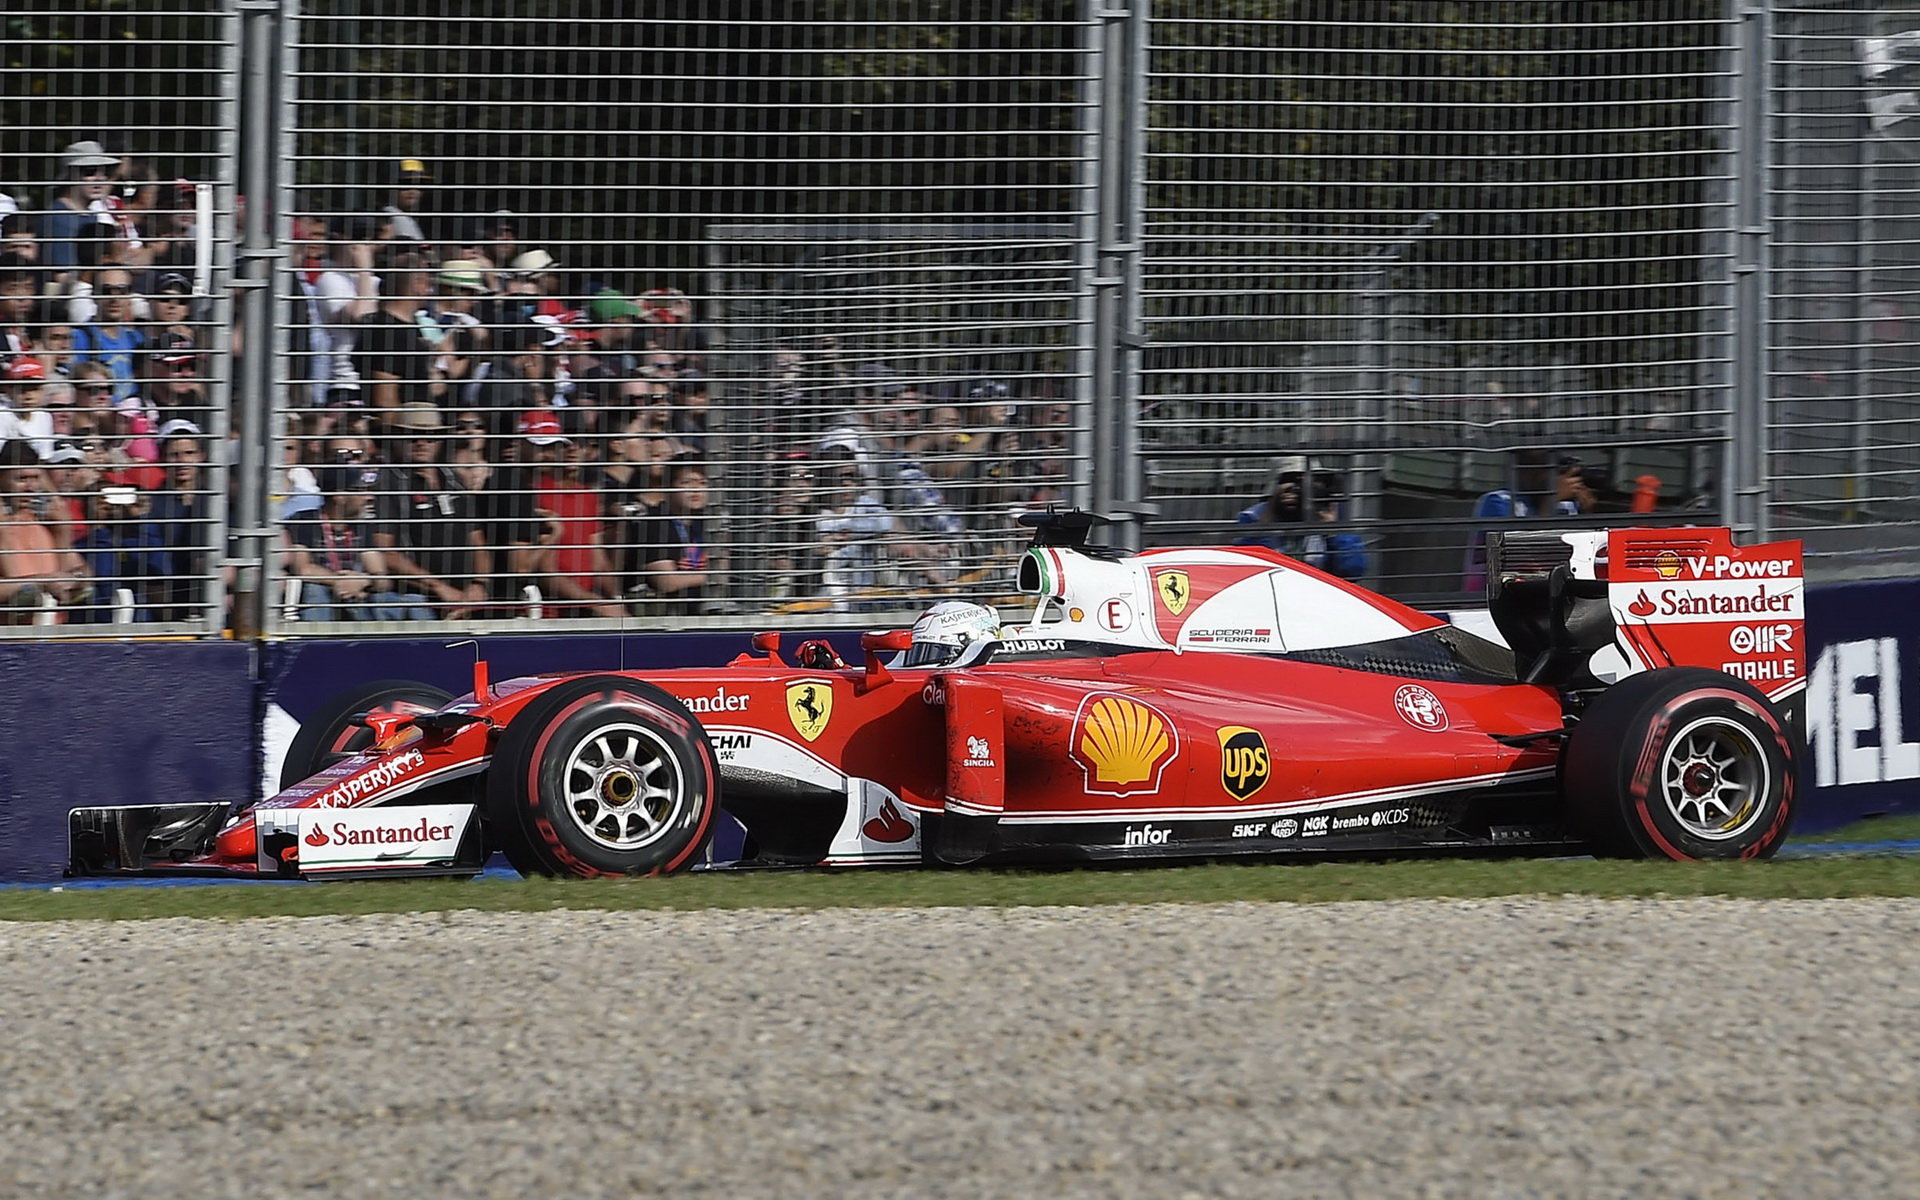 Sebastain Vettel při závodě v Melbourne